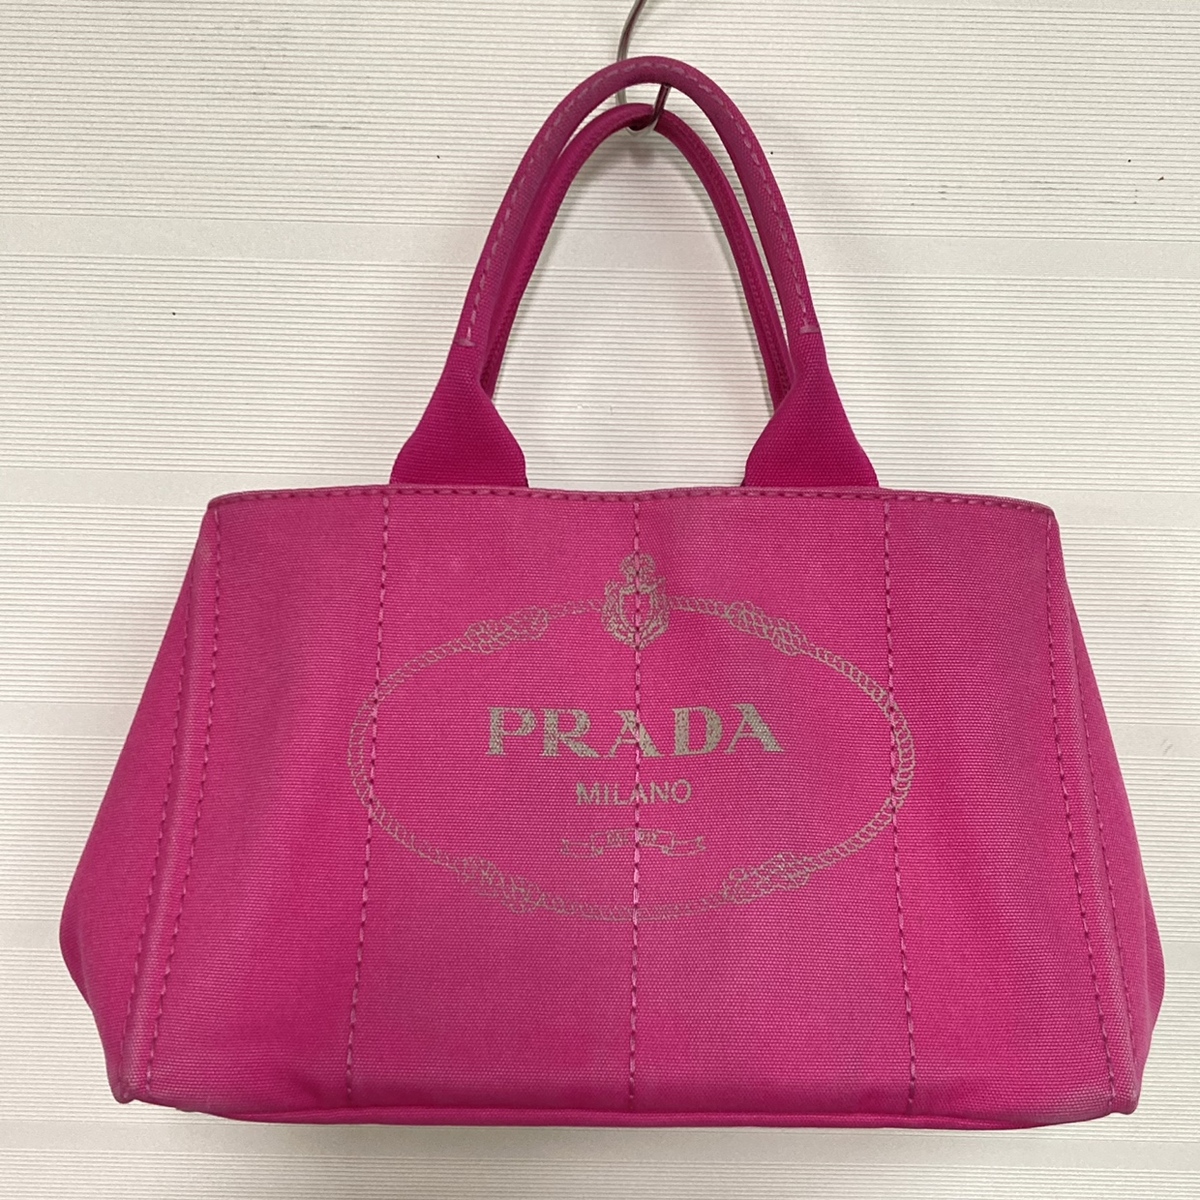 プラダのBN1877 ピンク デニム カナパ ハンドバッグの買取実績です。